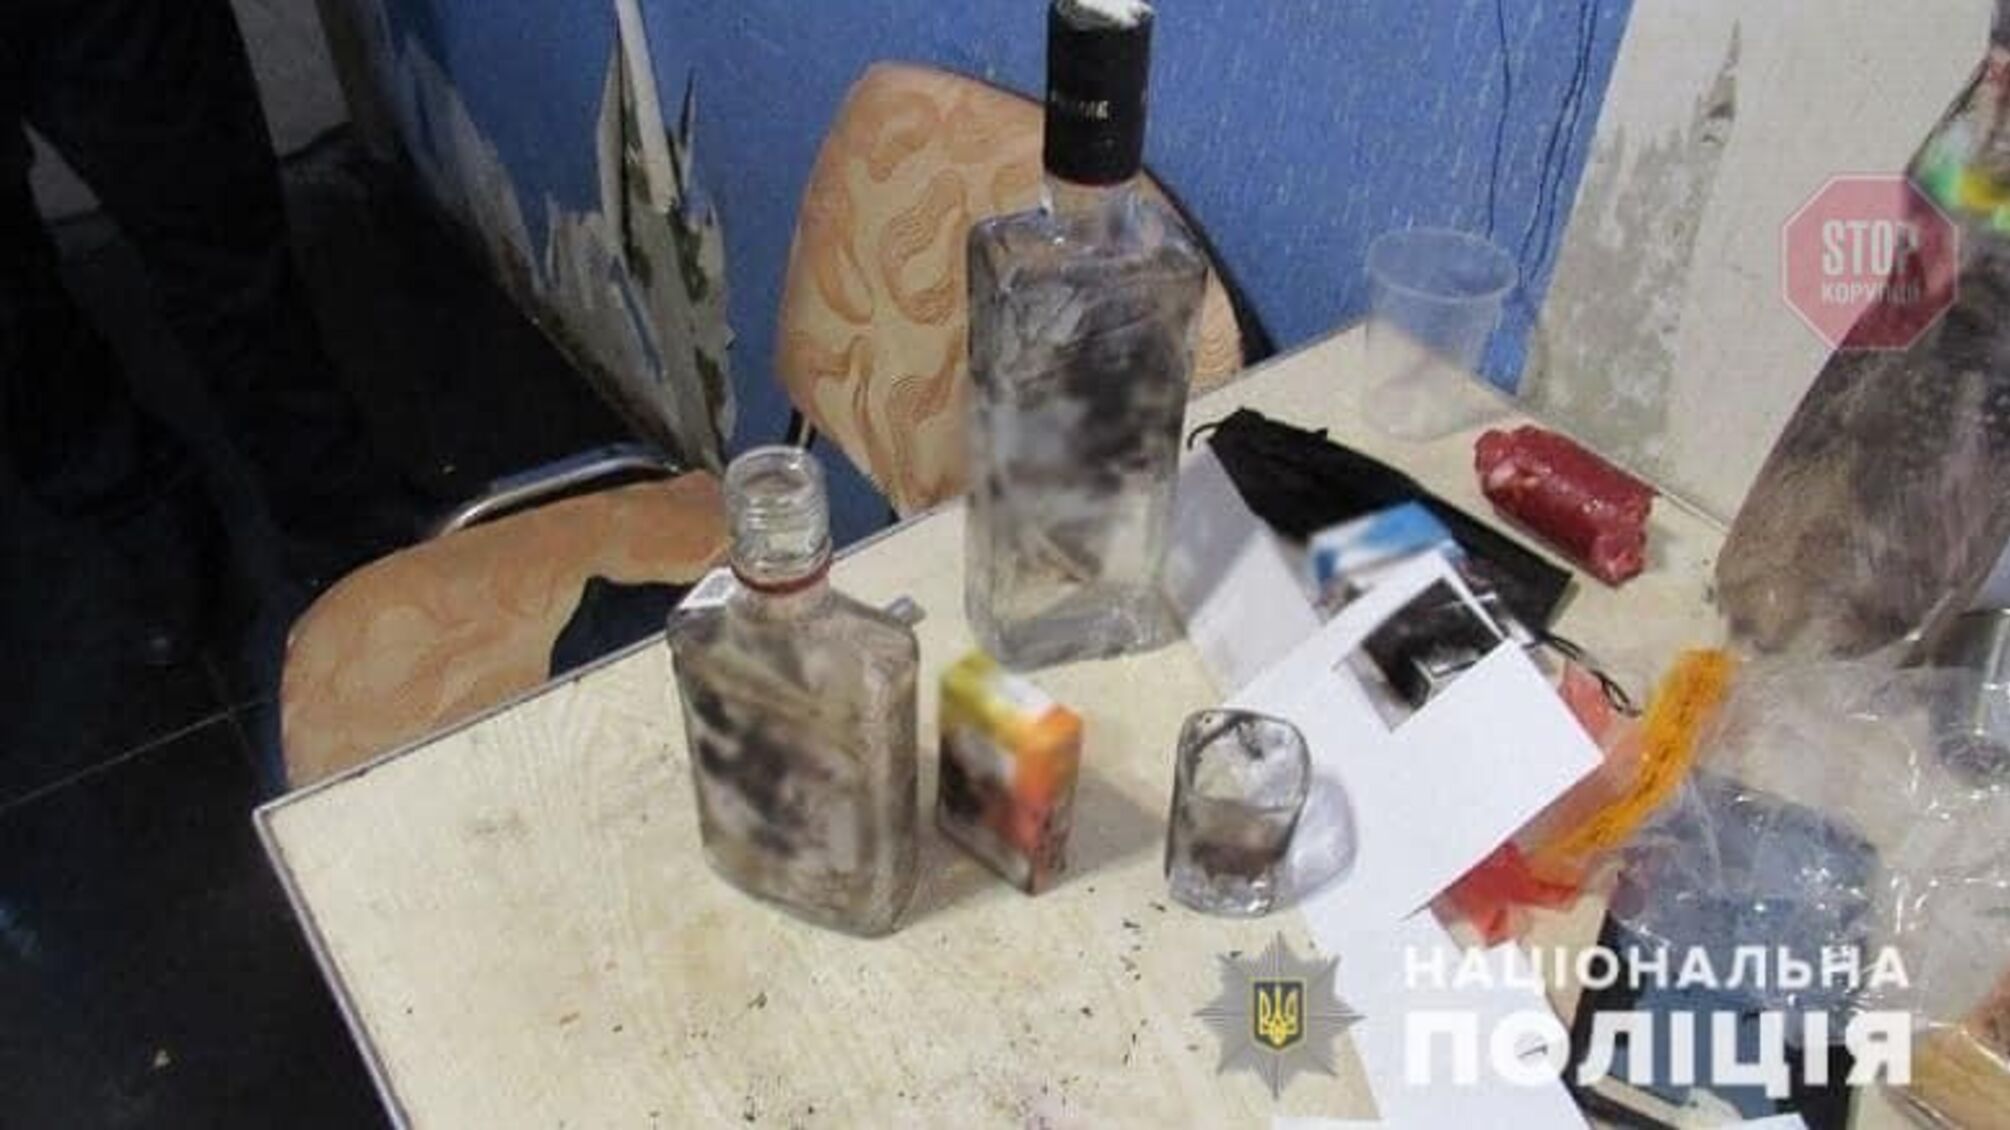 Из-за ревности: в Киеве мужчина ударил знакомого ножом и скрылся (фото)